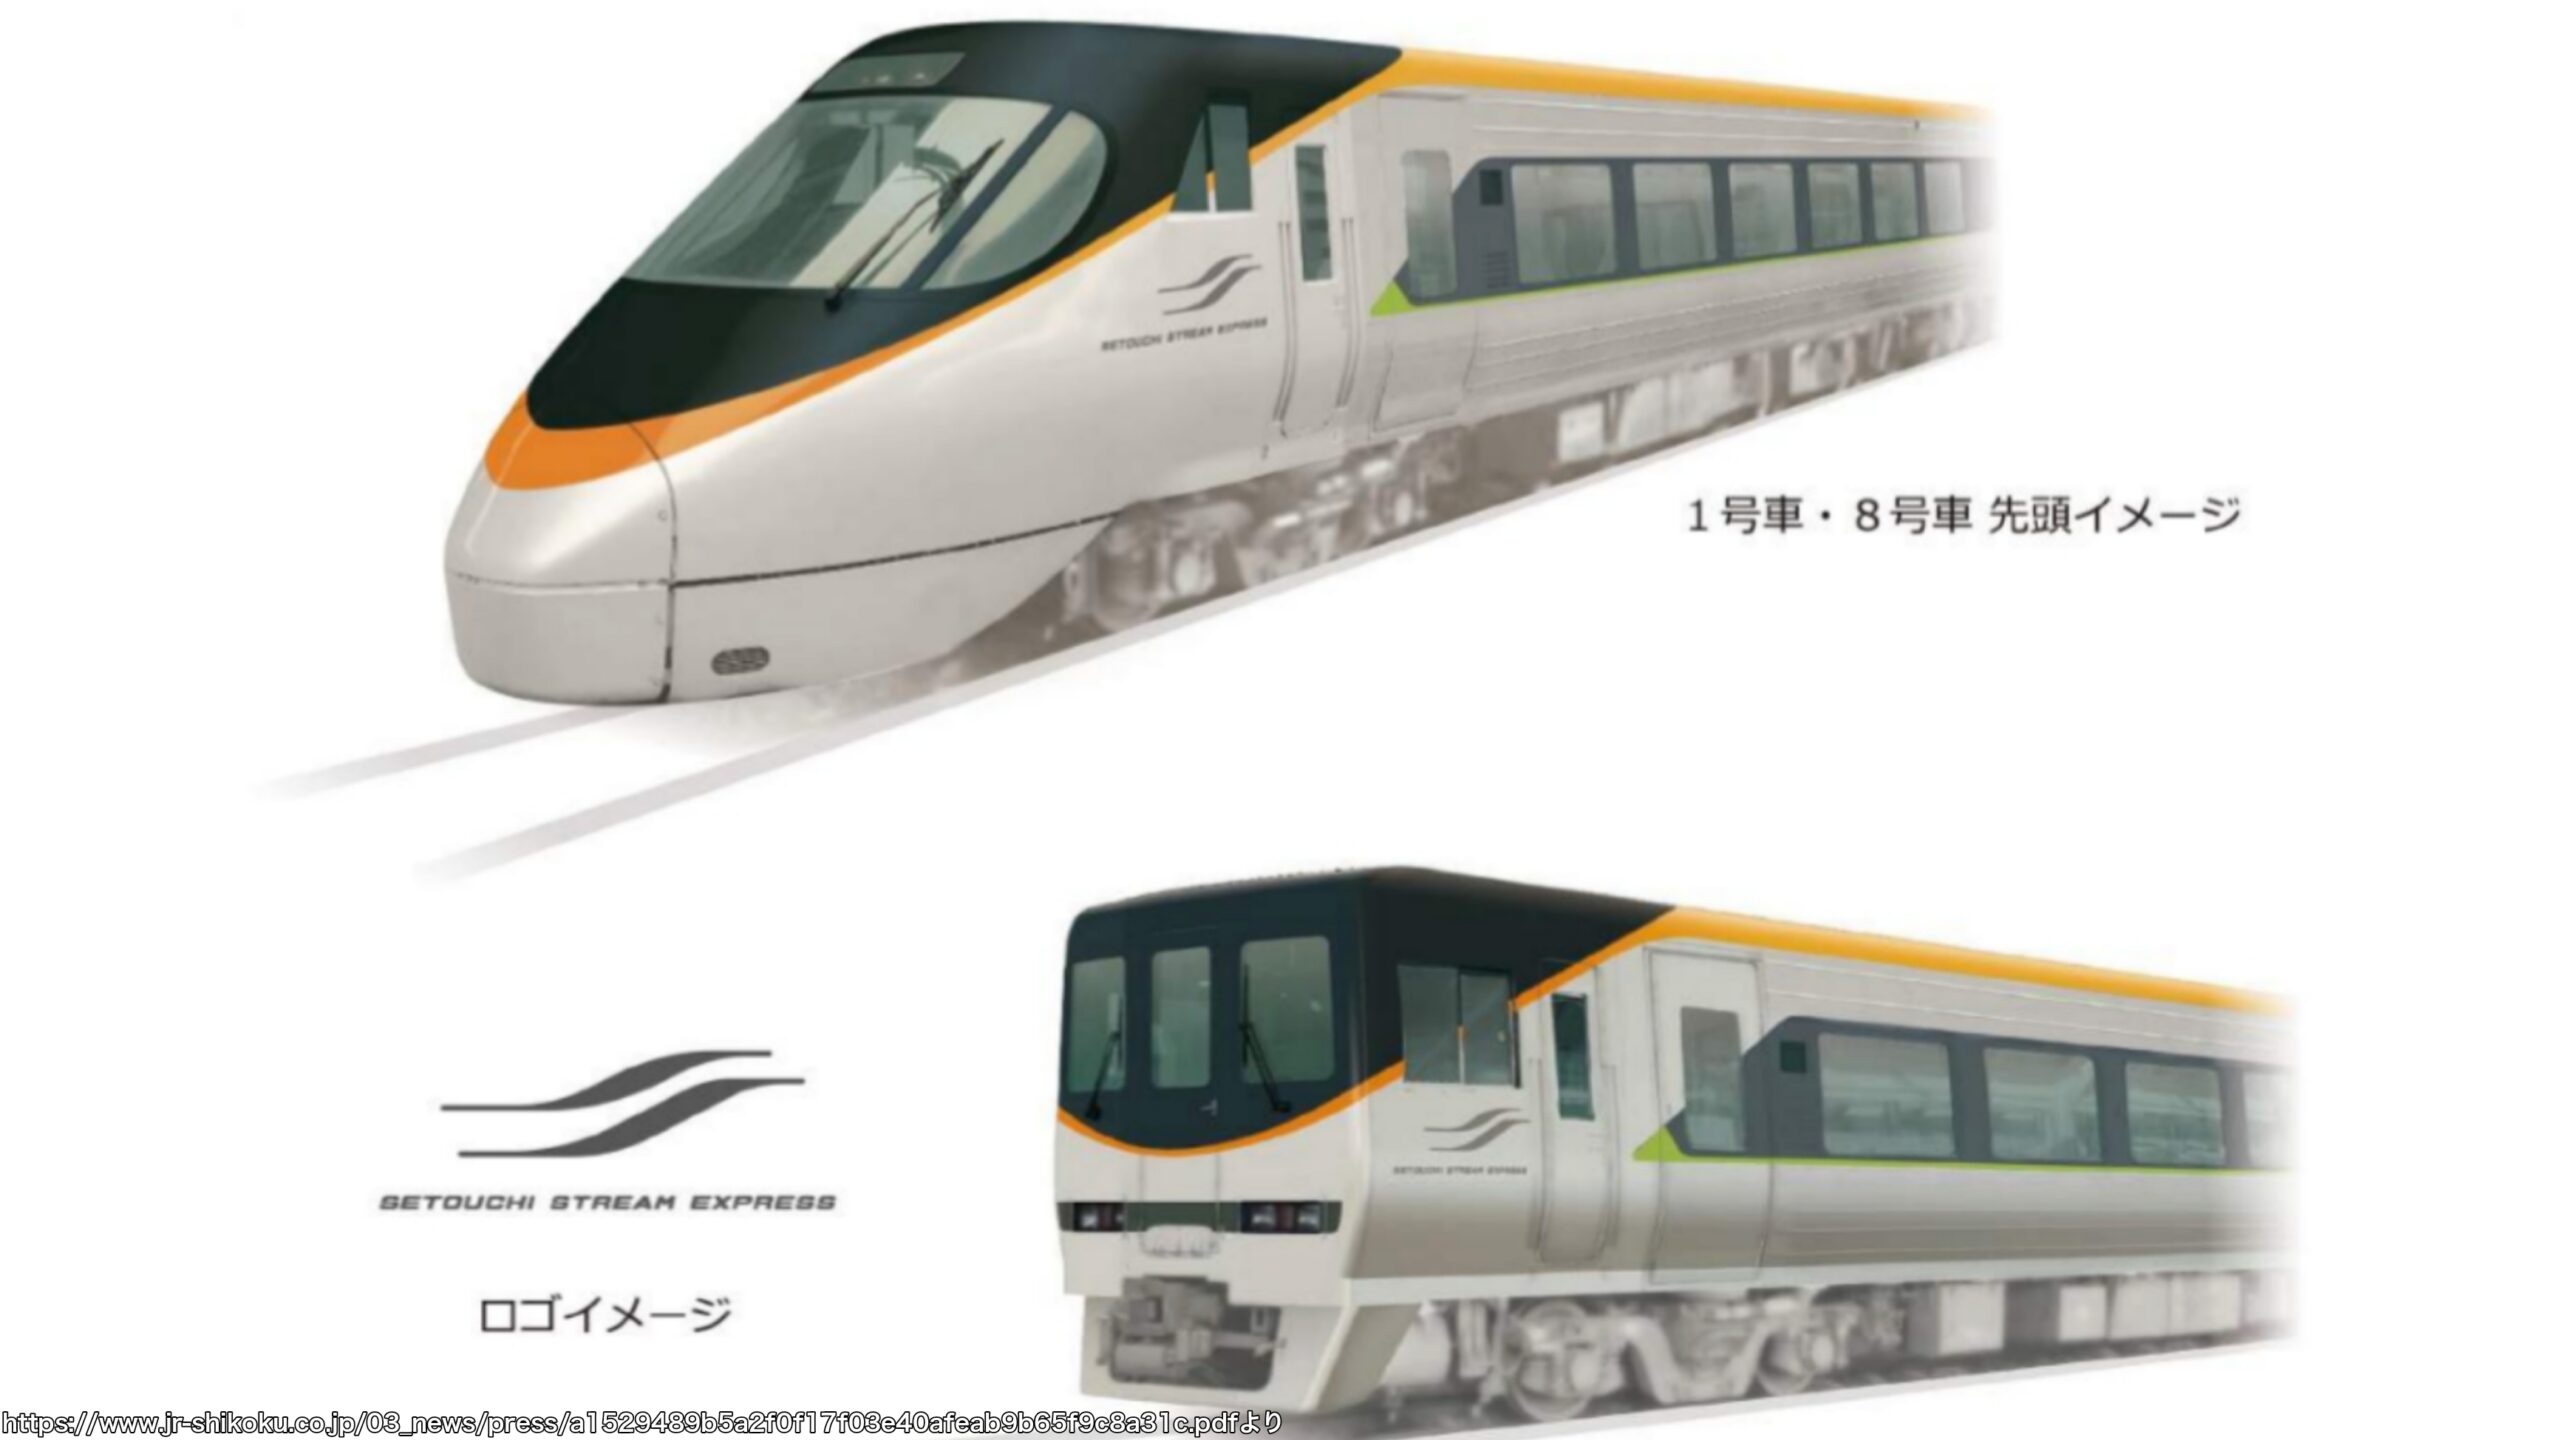 【リニューアル】JR四国8000系特急電車 コンセント設置/塗装変更